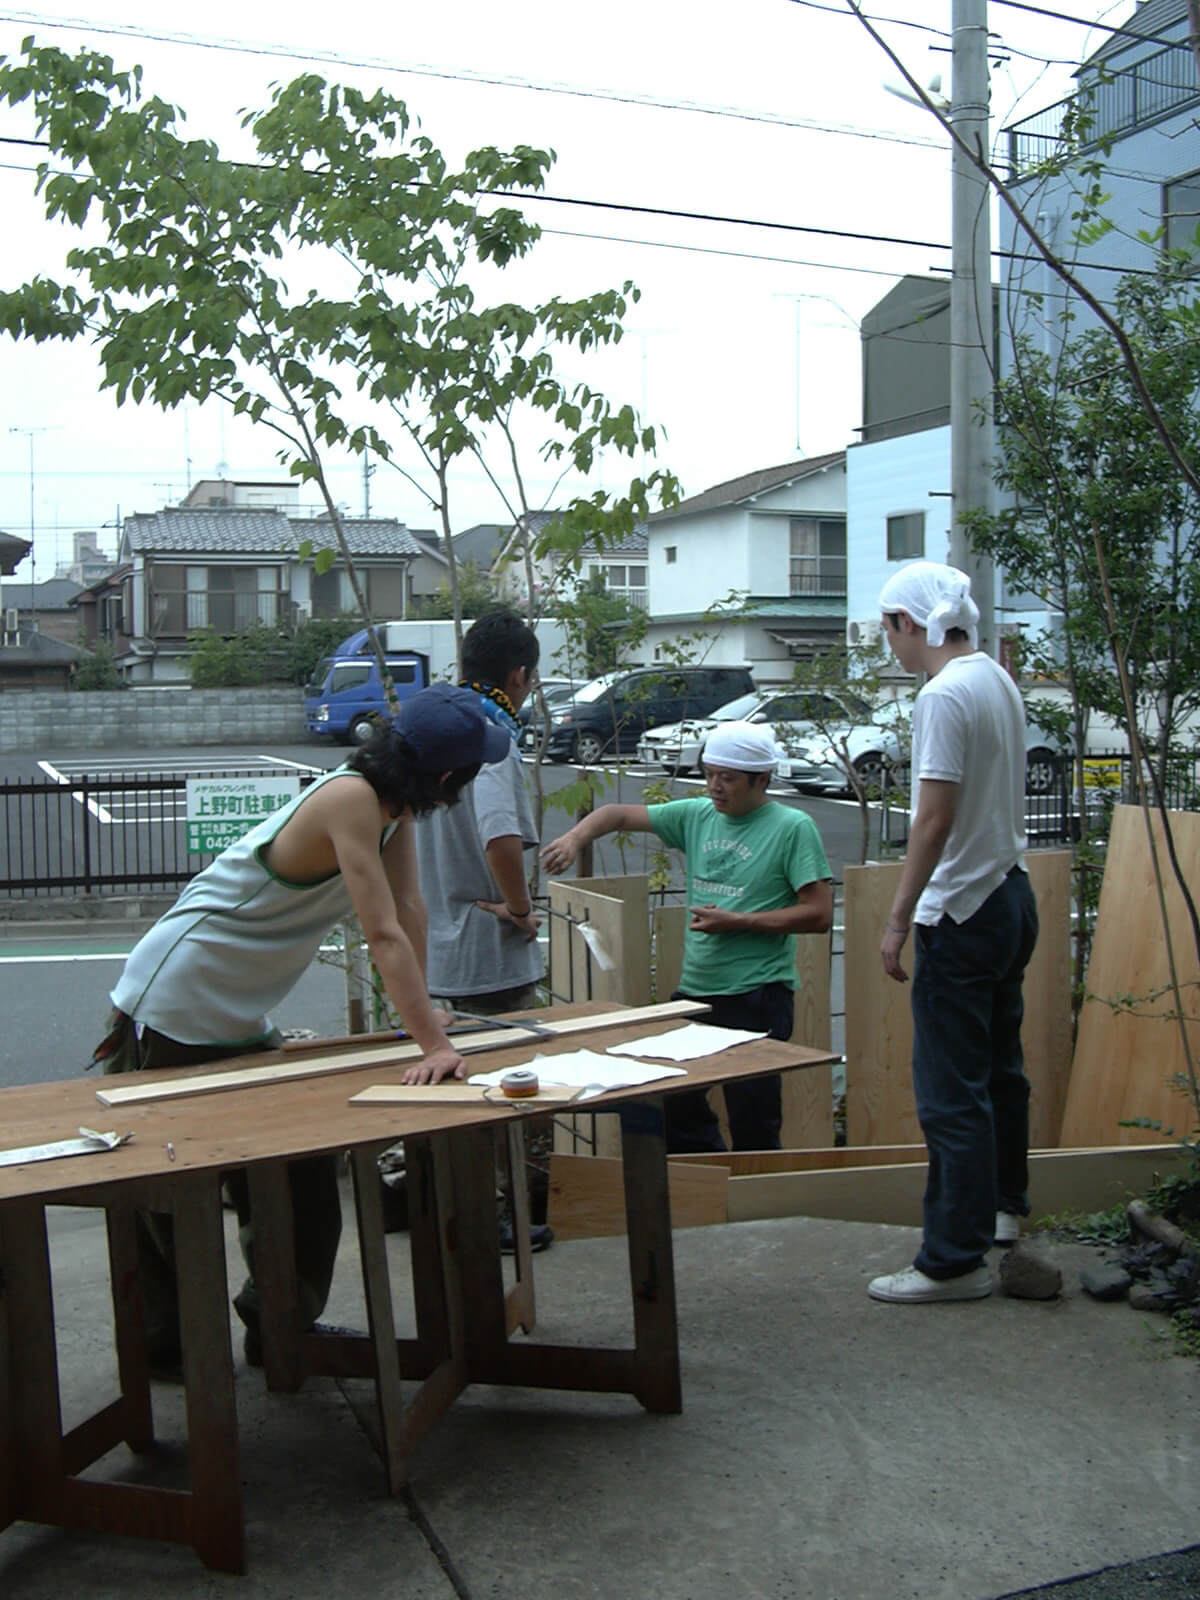 玄関先で木の板を見ながら小屋工事のための話し合いをしている、4人の若い男性